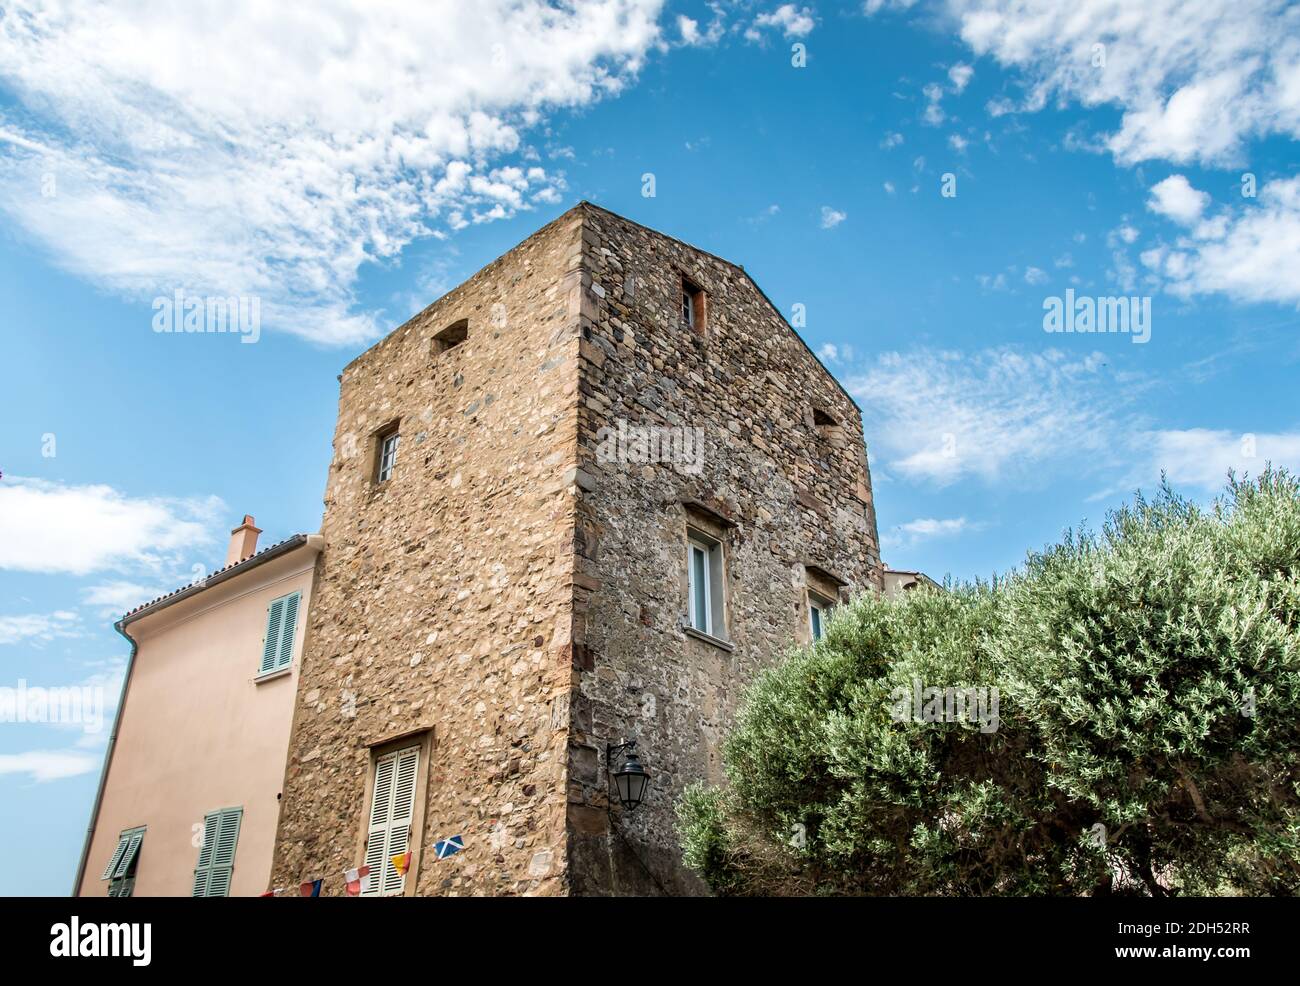 Maison typique dans le sud de la France Banque D'Images